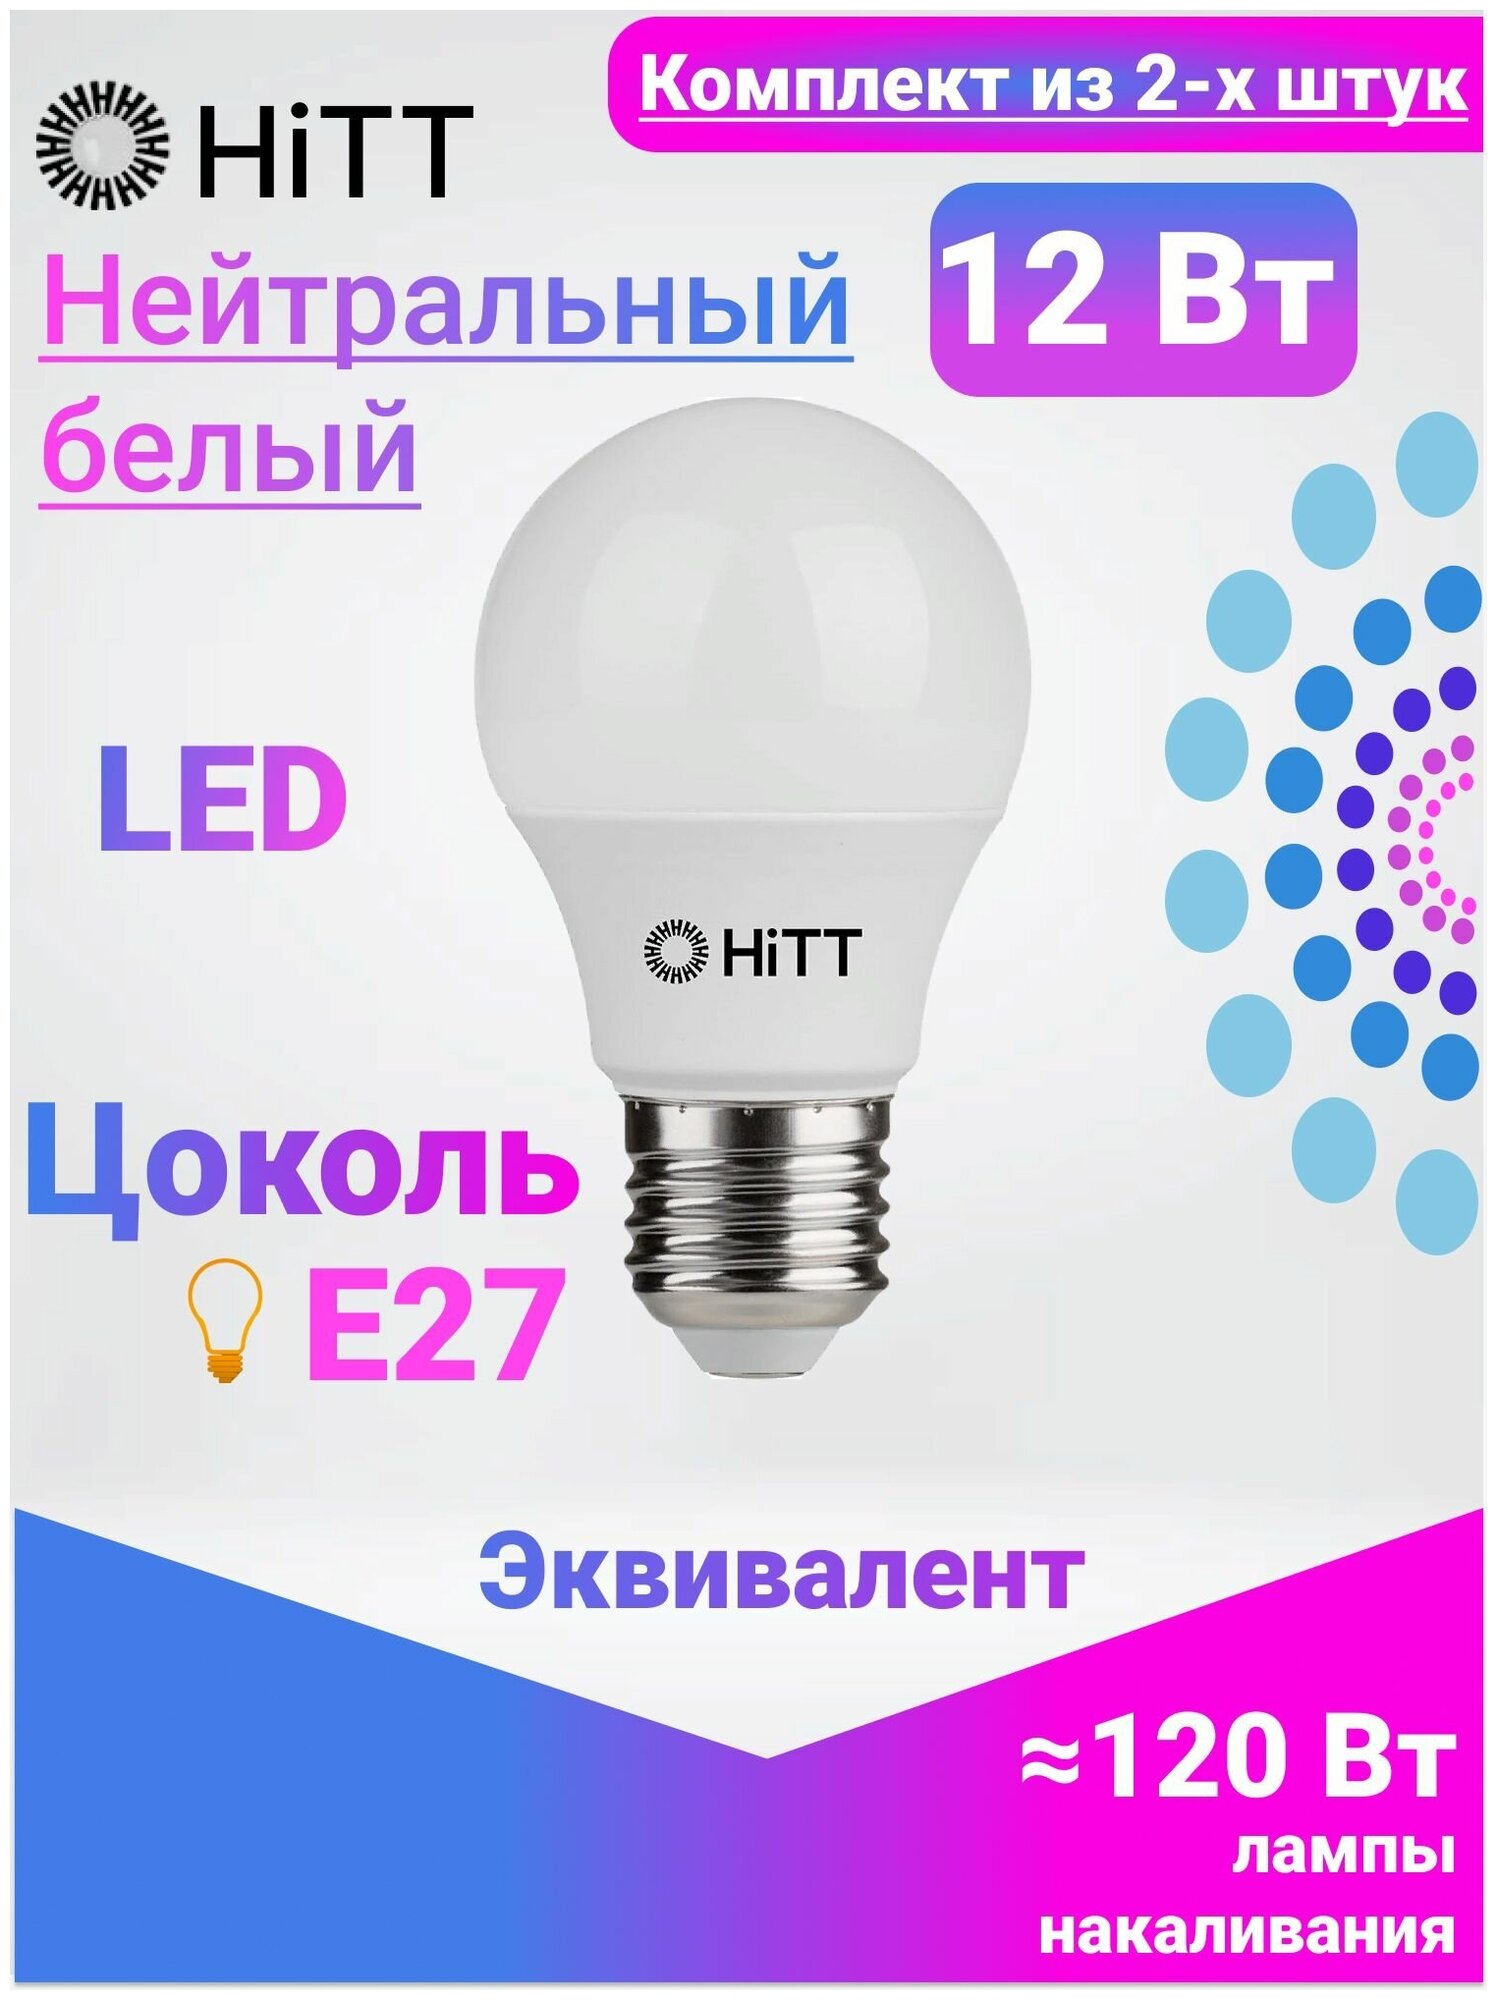 HiTT Энергоэффективная светодиодная лампа, Комплект из 2-х штук, 12Вт E27 4000к